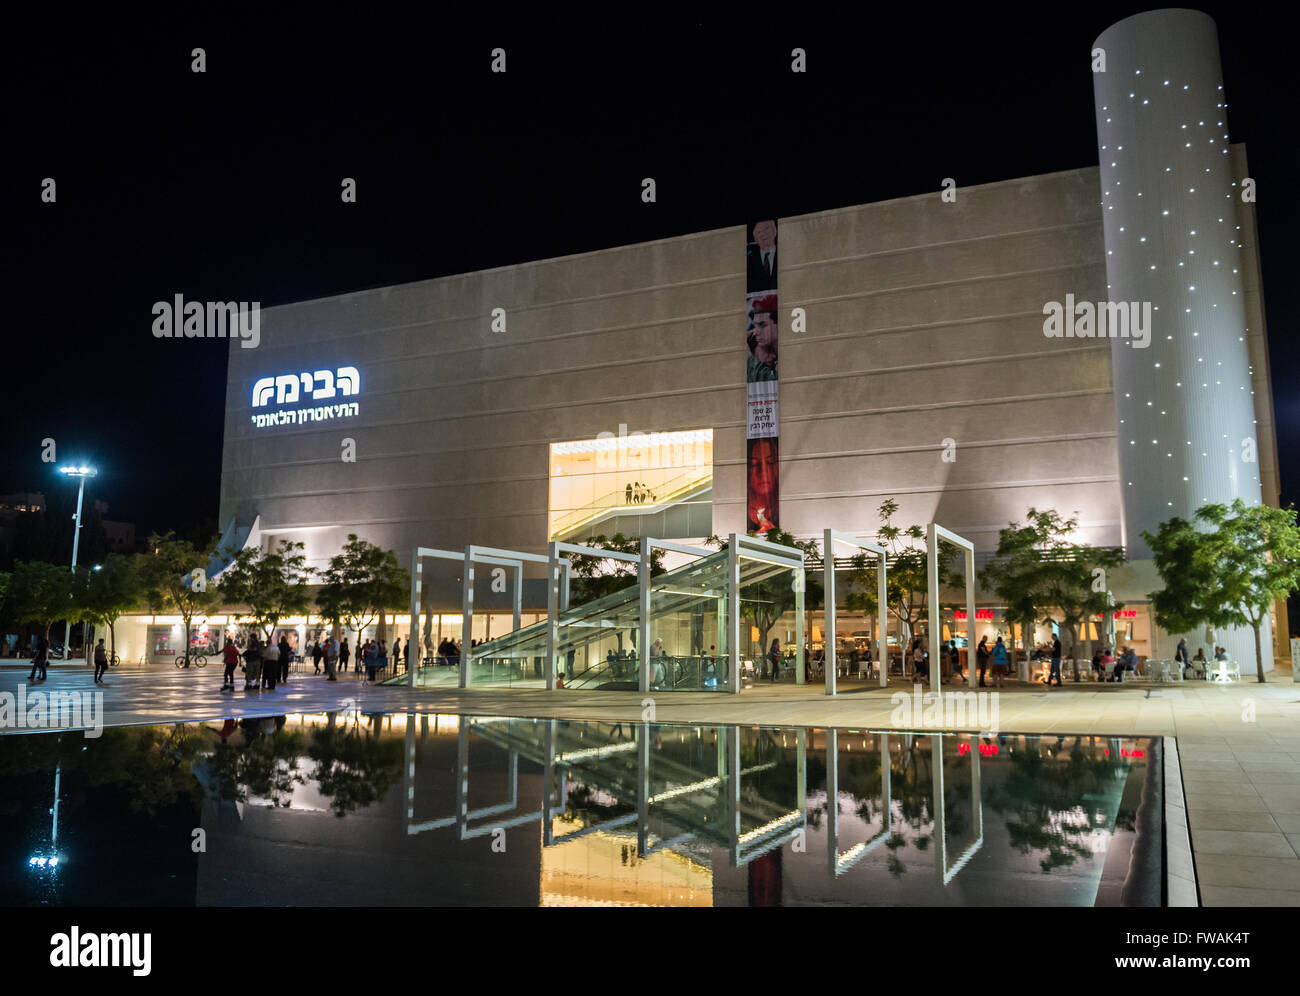 Habima Theatre at Habima Square (also called Orchestra Plaza) in Tel Aviv city, Israel Stock Photo